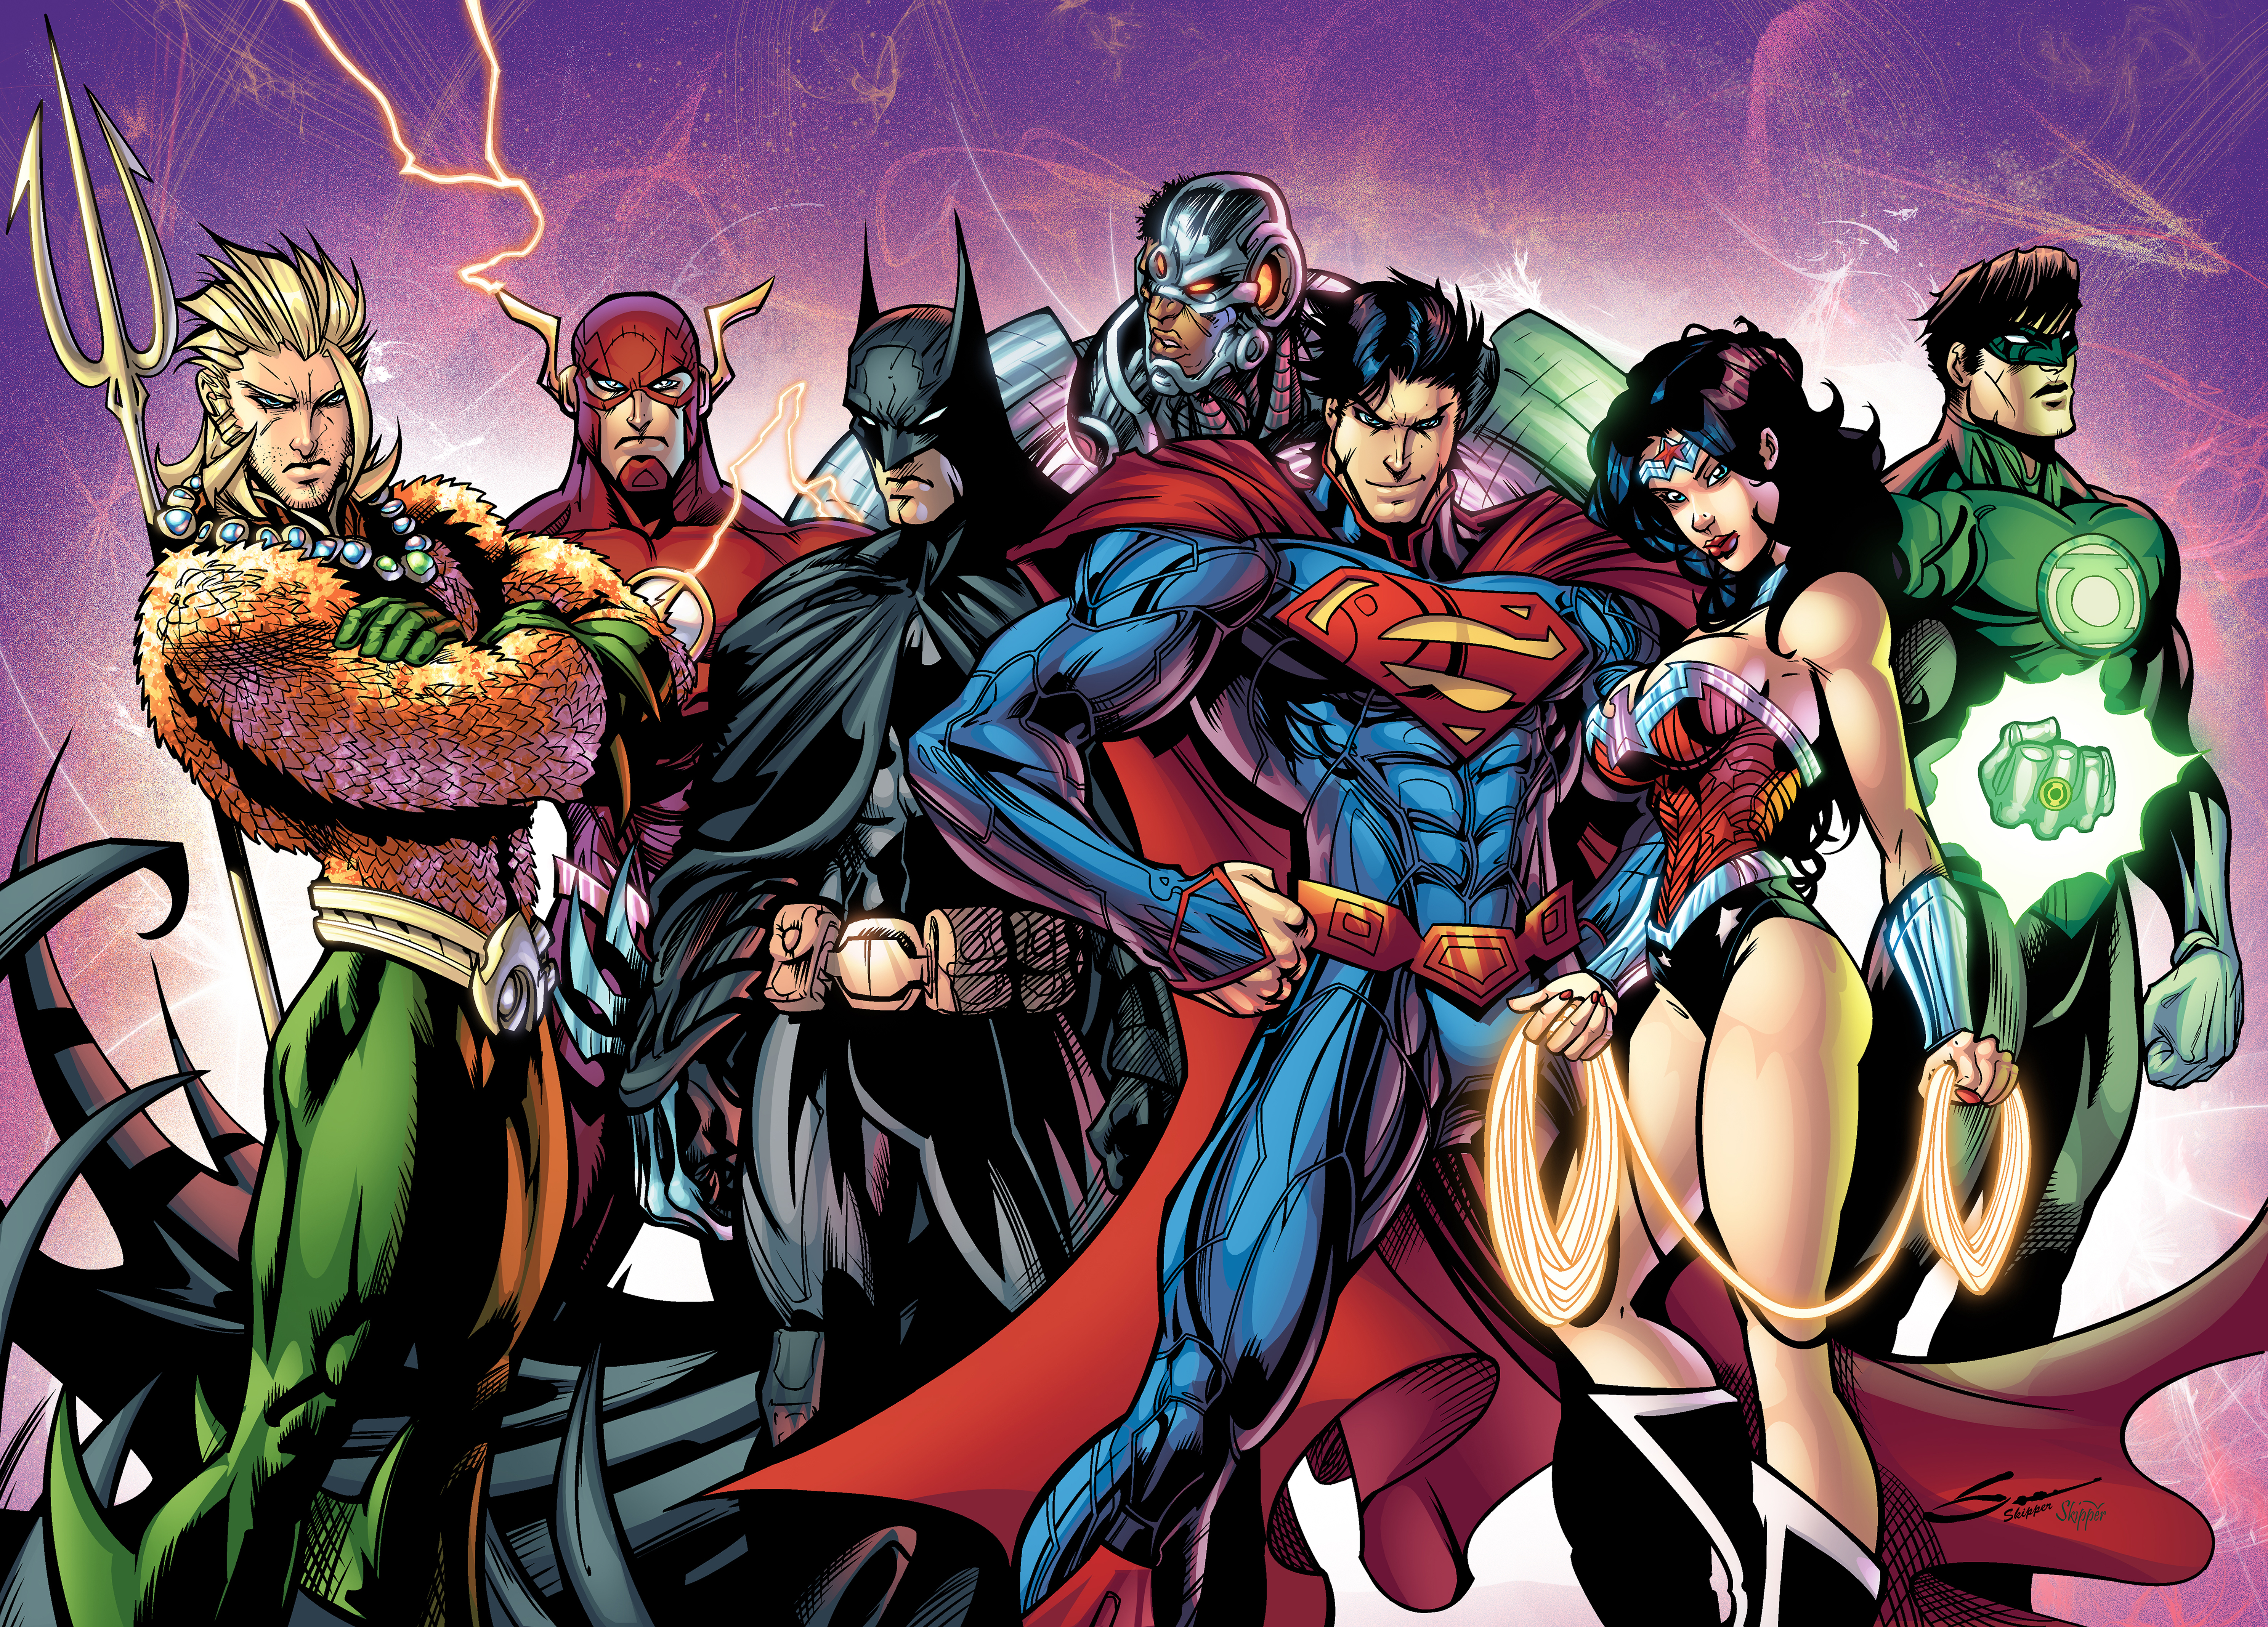 Free HD barry allen, comics, justice league, aquaman, batman, cyborg (dc comics), dc comics, flash, green lantern, hal jordan, superman, the new 52, wonder woman